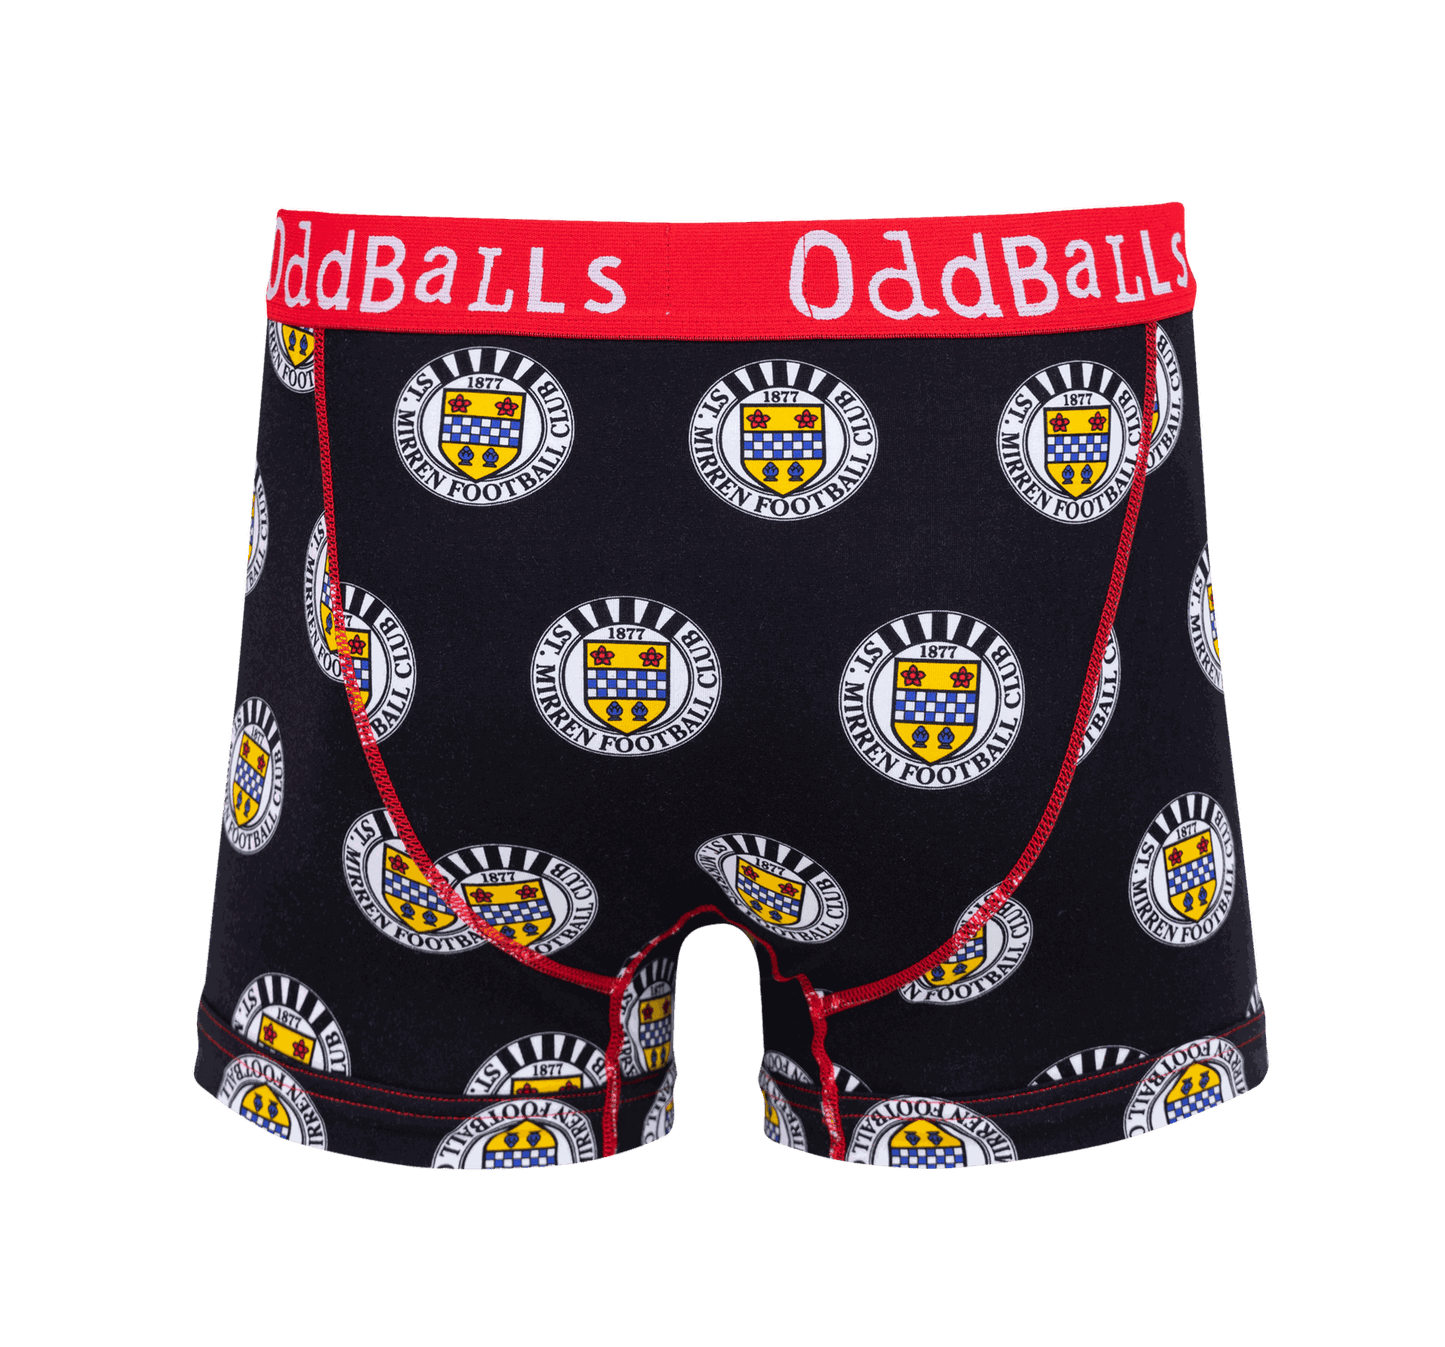 Jnr Oddballs Boxer Shorts